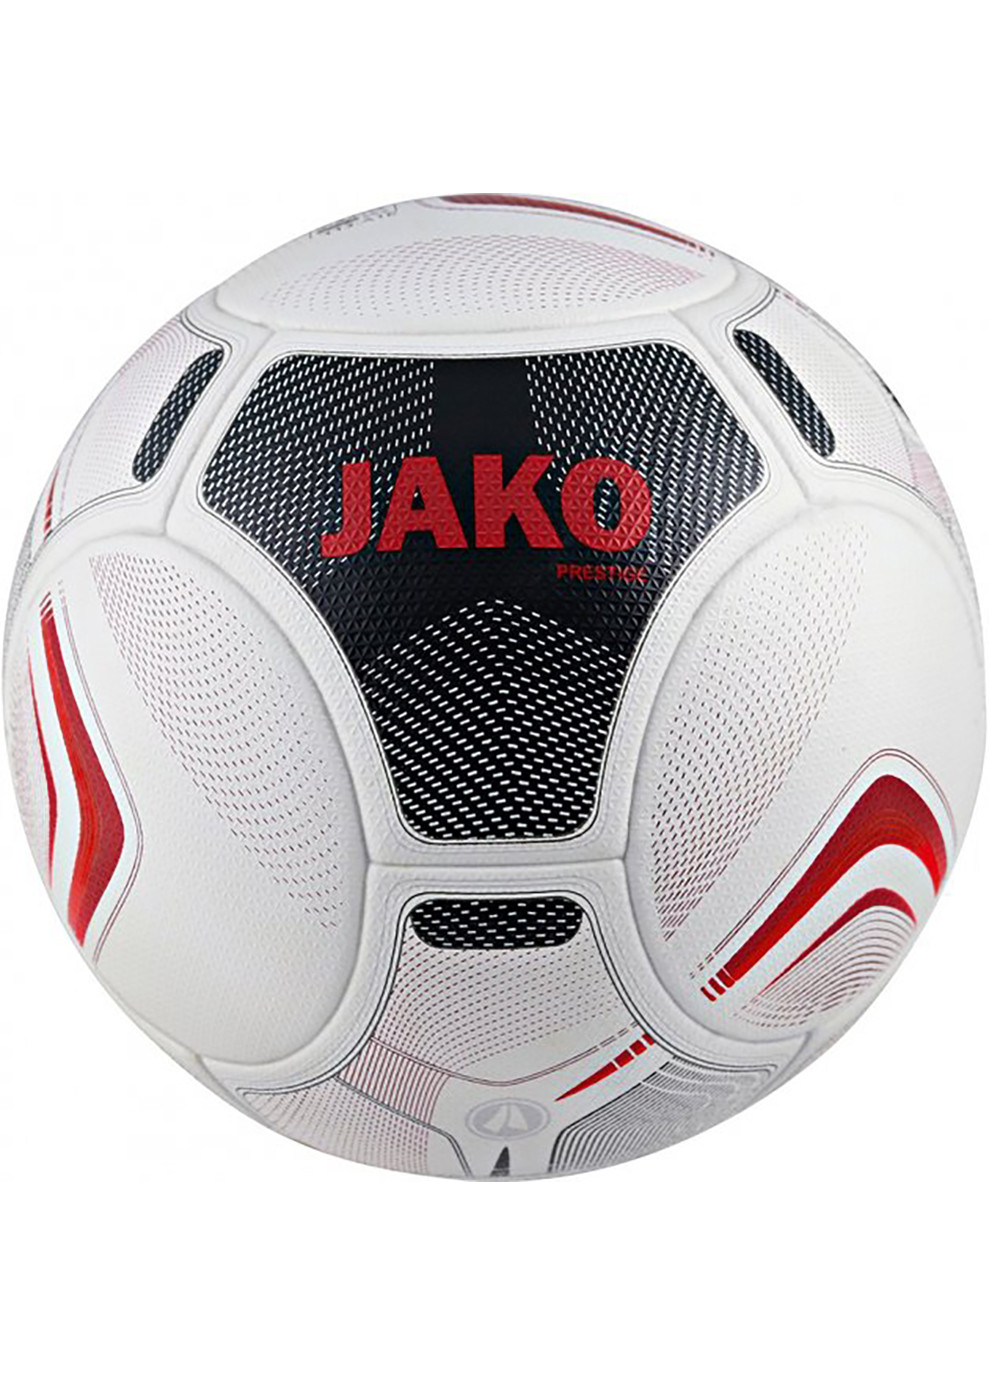 М'яч футбольний Fifa Prestige Qulity Pro білий, чорний, бордовий Уні 5 Jako (259296446)